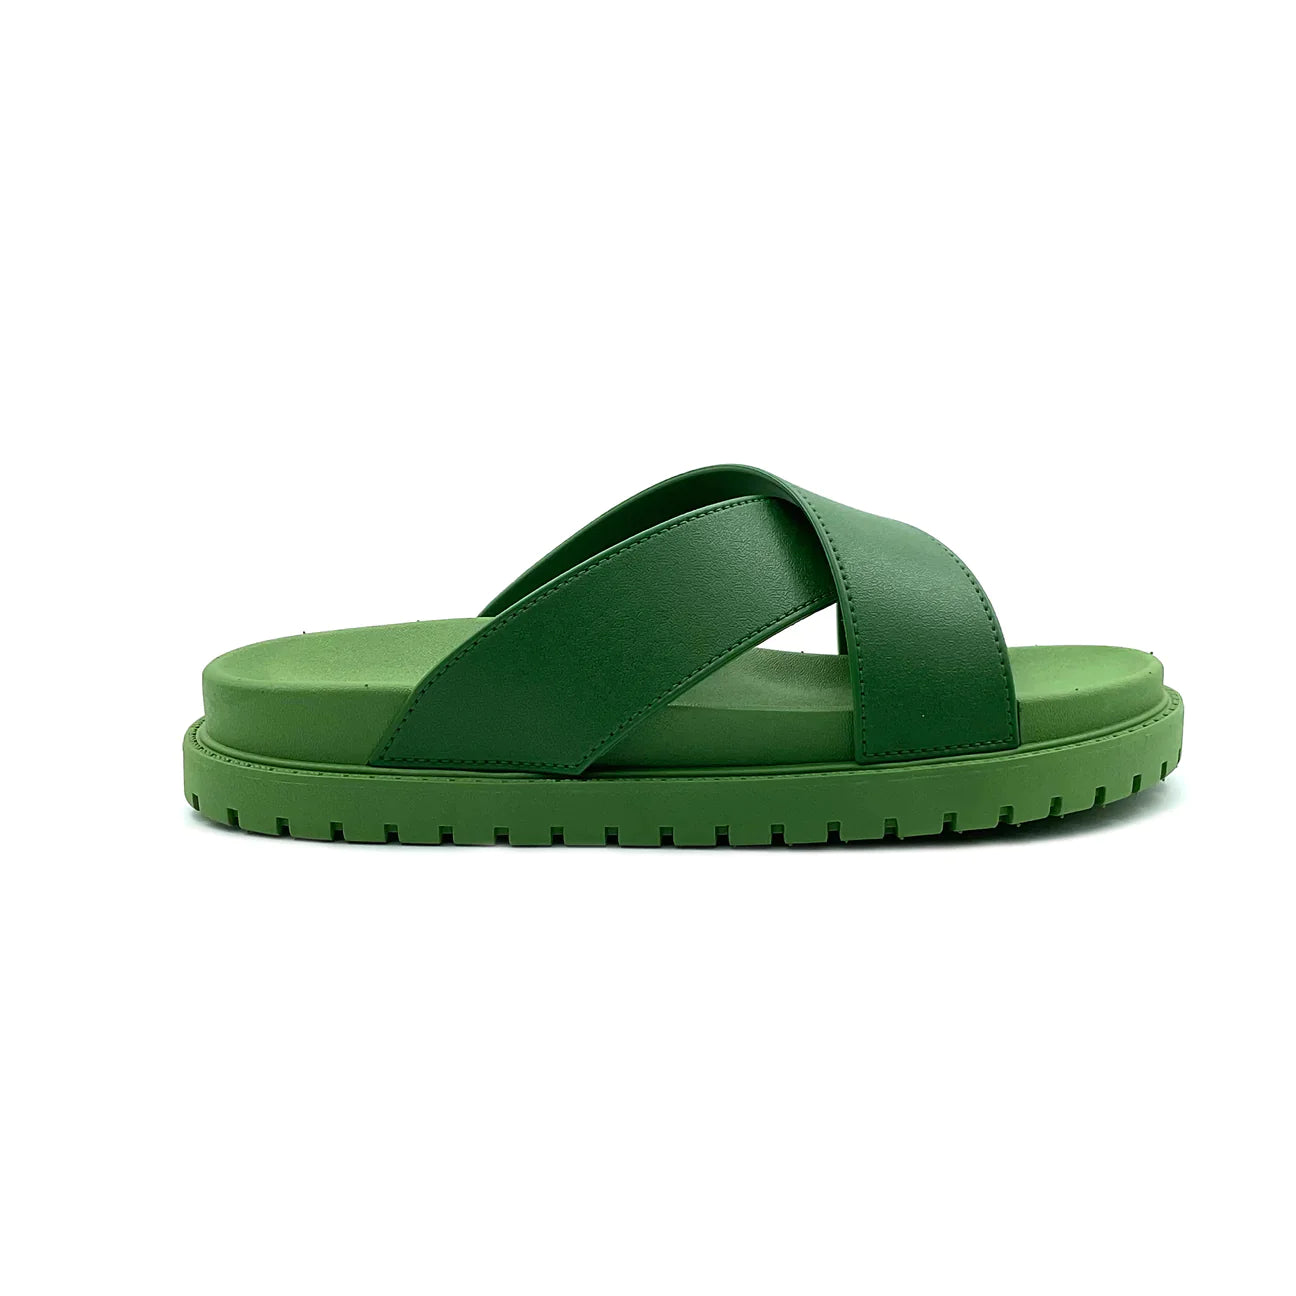 Riosa Cross Slide Sandals